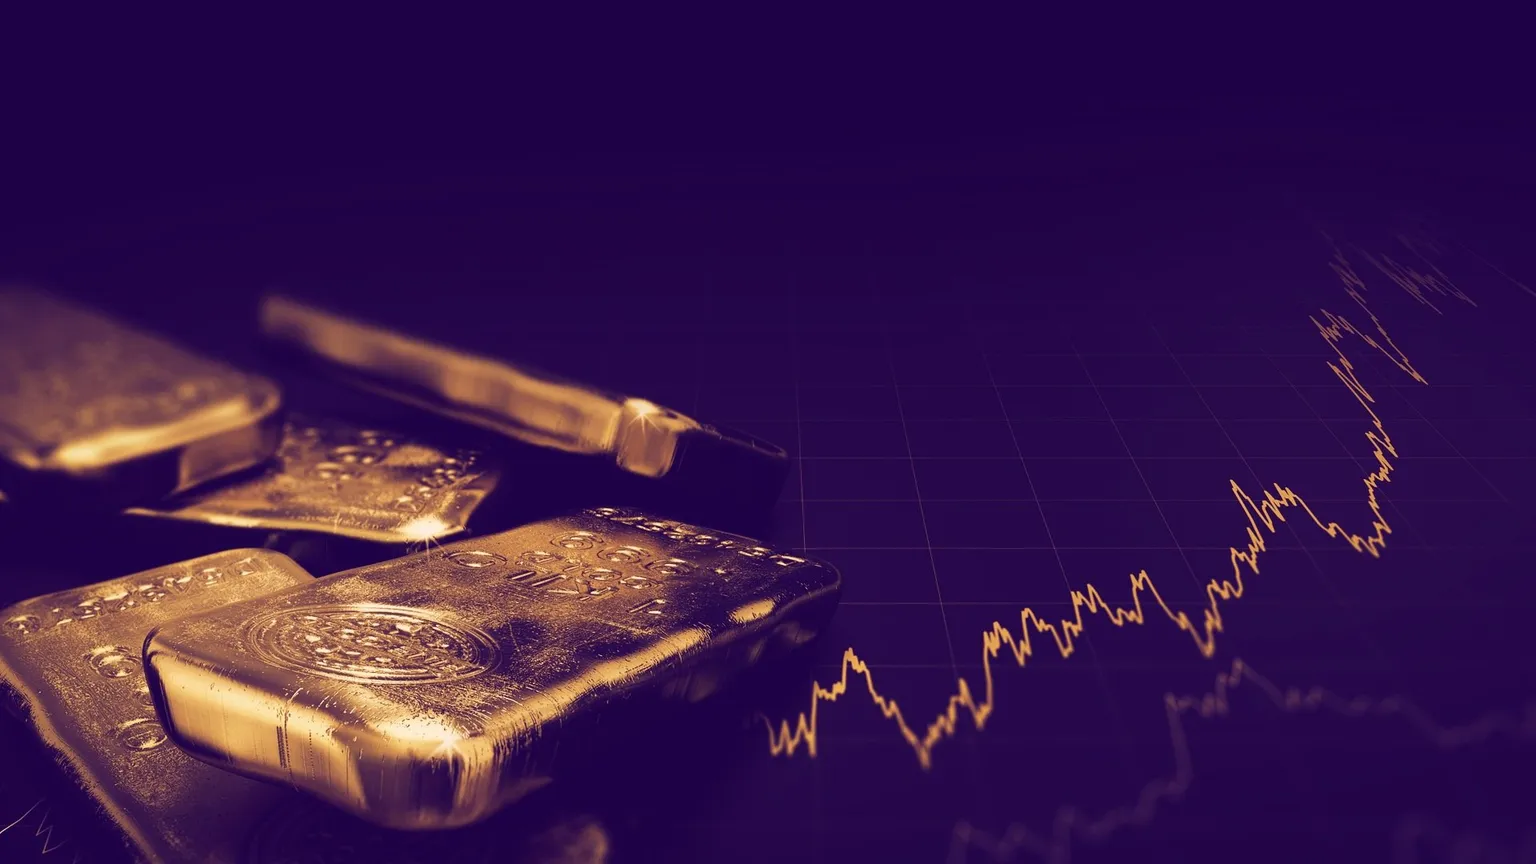 El volumen de oro se triplica y su precio alcanza un máximo histórico. Imagen: Shutterstock